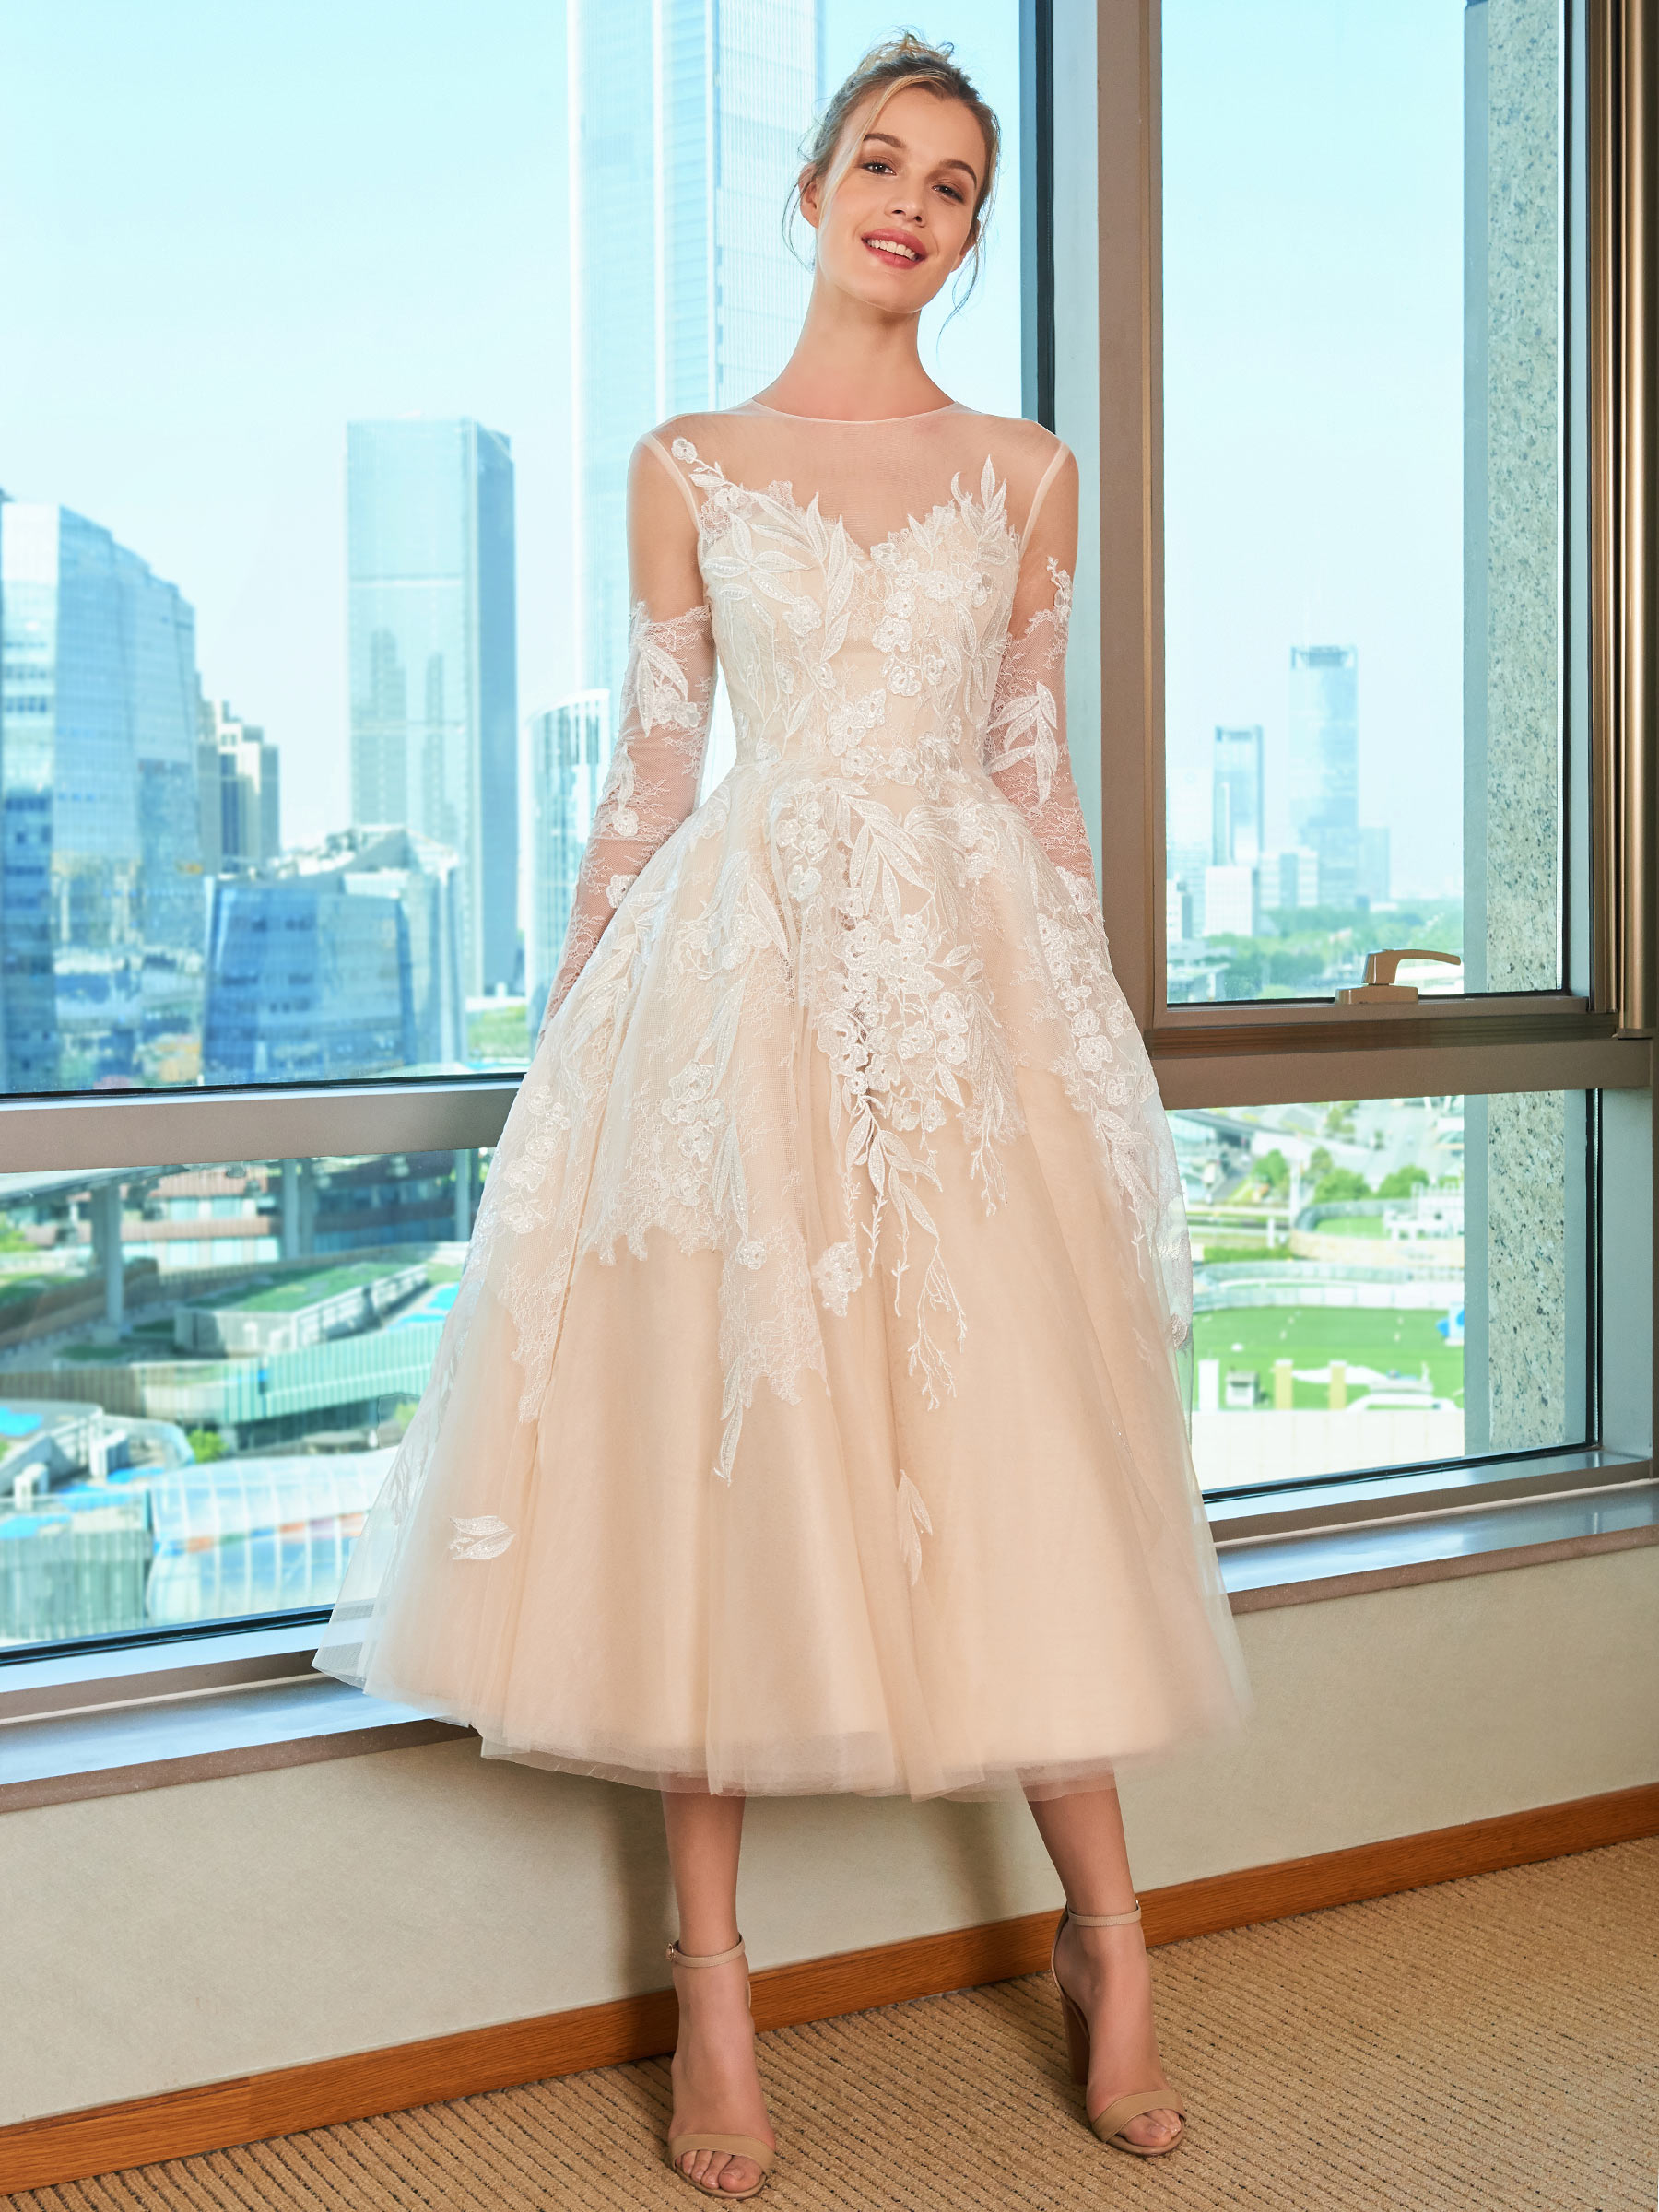 Lace Tea-Length Beach Wedding Dress with Long Sleeve